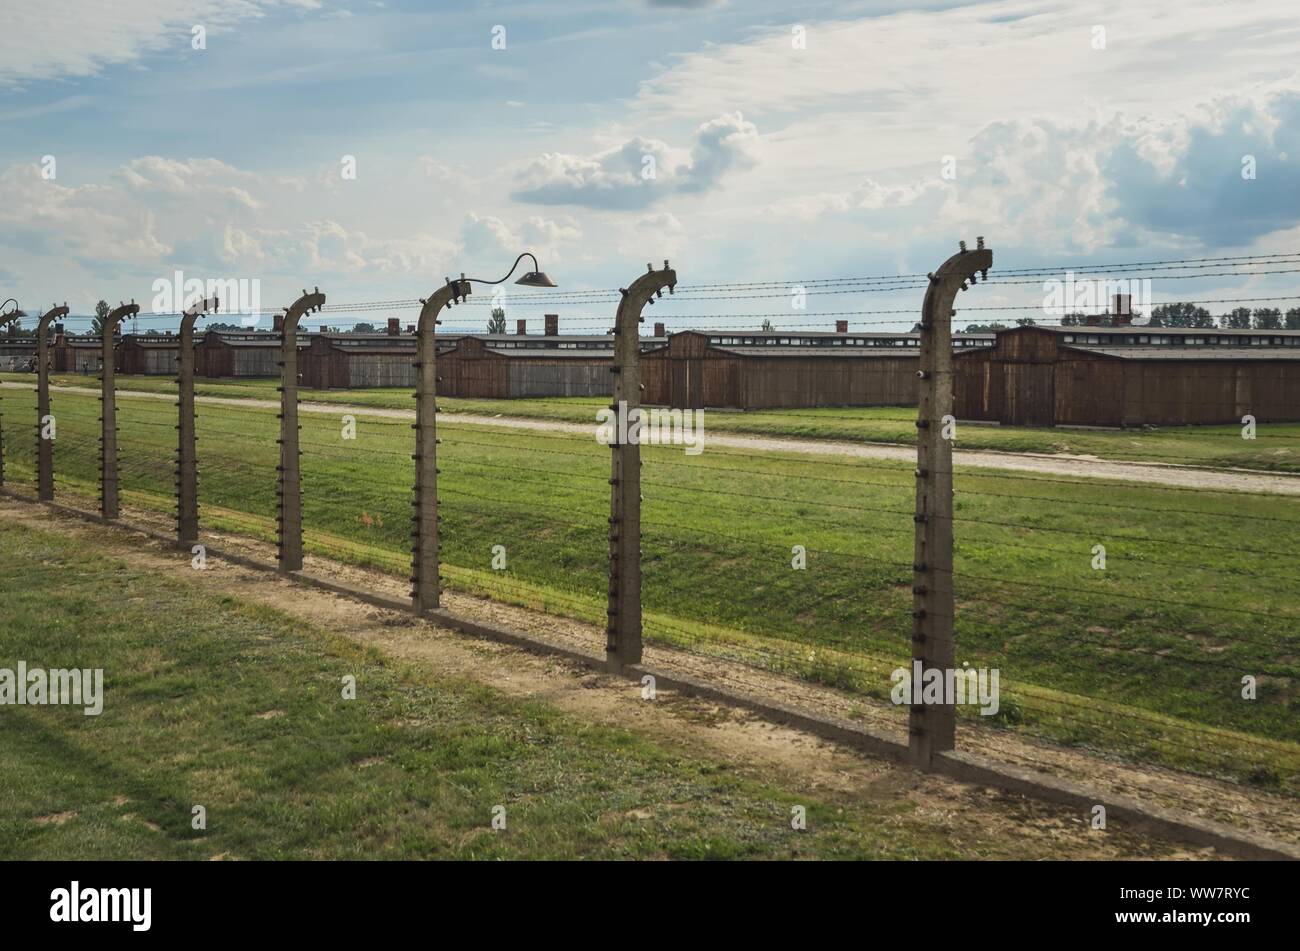 OSWIECIM, Pologne - 17 août 2019 : Les bâtiments dans le camp de concentration Auschwitz Birkenau à Oswiecim, Pologne. Banque D'Images